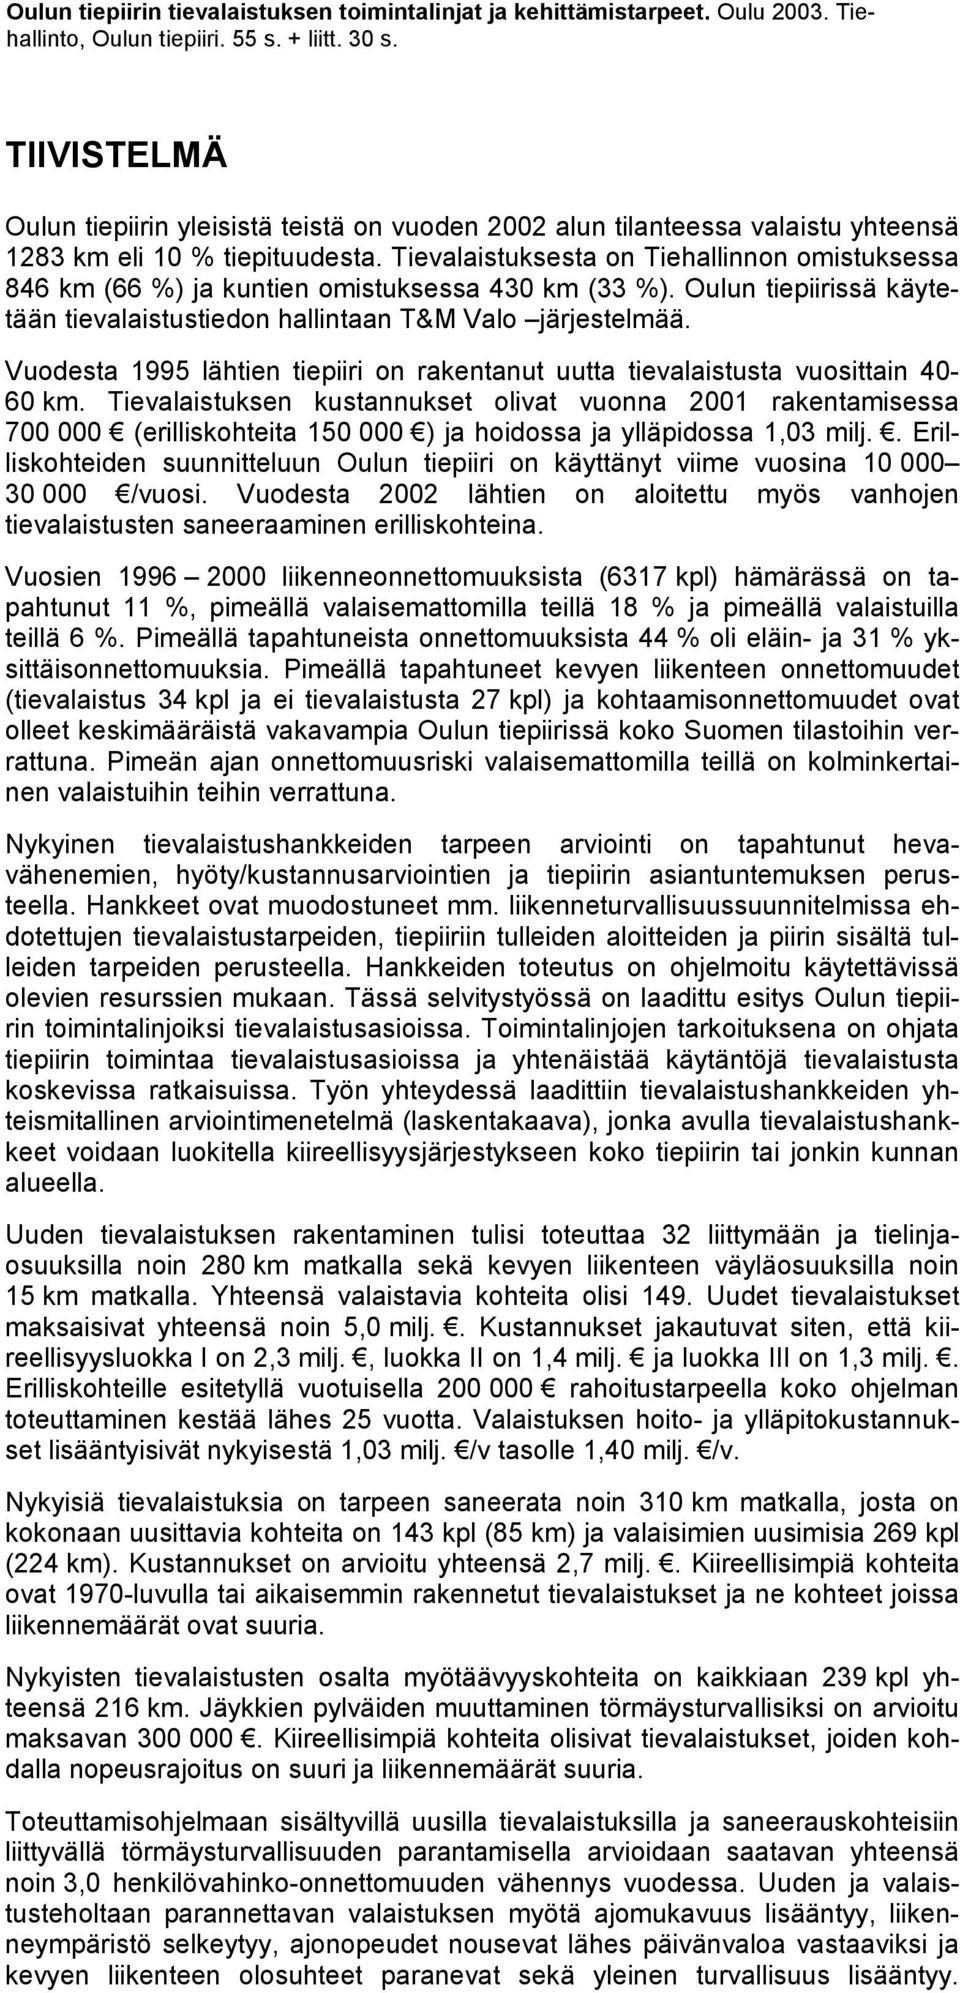 Tievalaistuksesta on Tiehallinnon omistuksessa 846 km (66 %) ja kuntien omistuksessa 430 km (33 %). Oulun tiepiirissä käytetään tievalaistustiedon hallintaan T&M Valo järjestelmää.